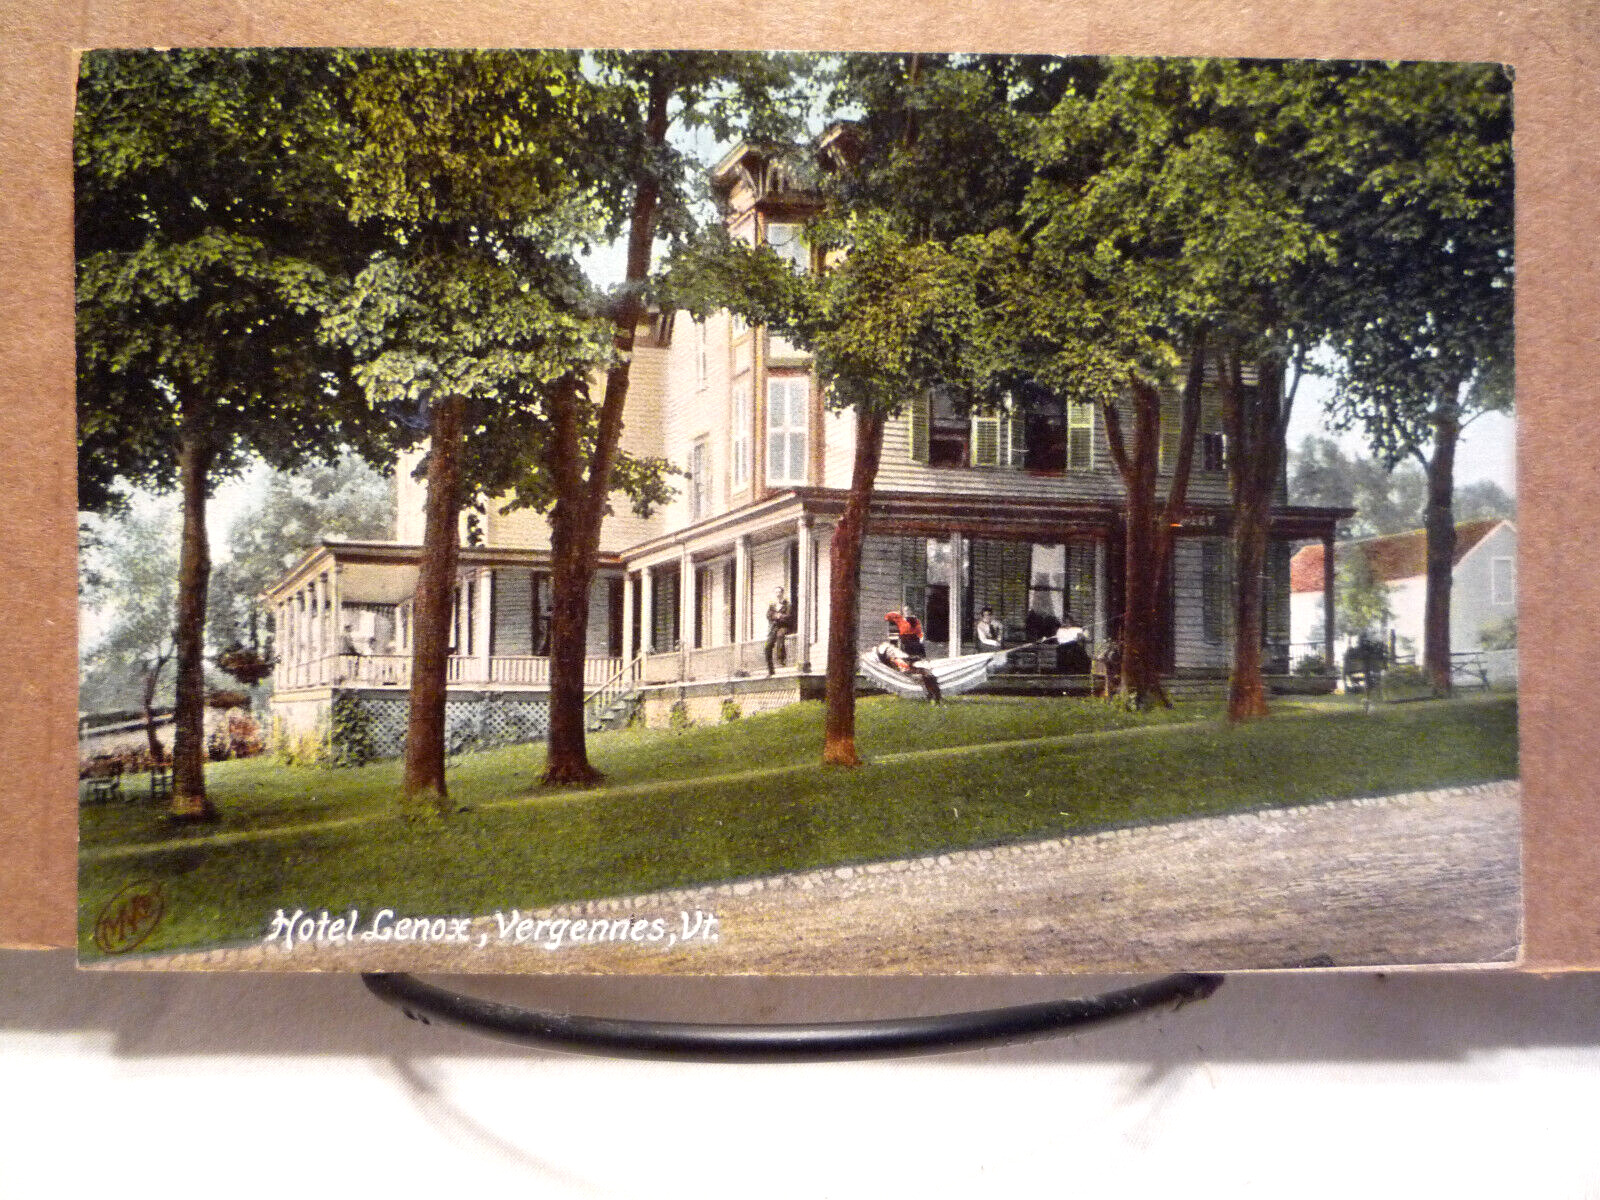 1907 Vermont VT ~ Vergennes, Hotel Genox, Hammock, Porches